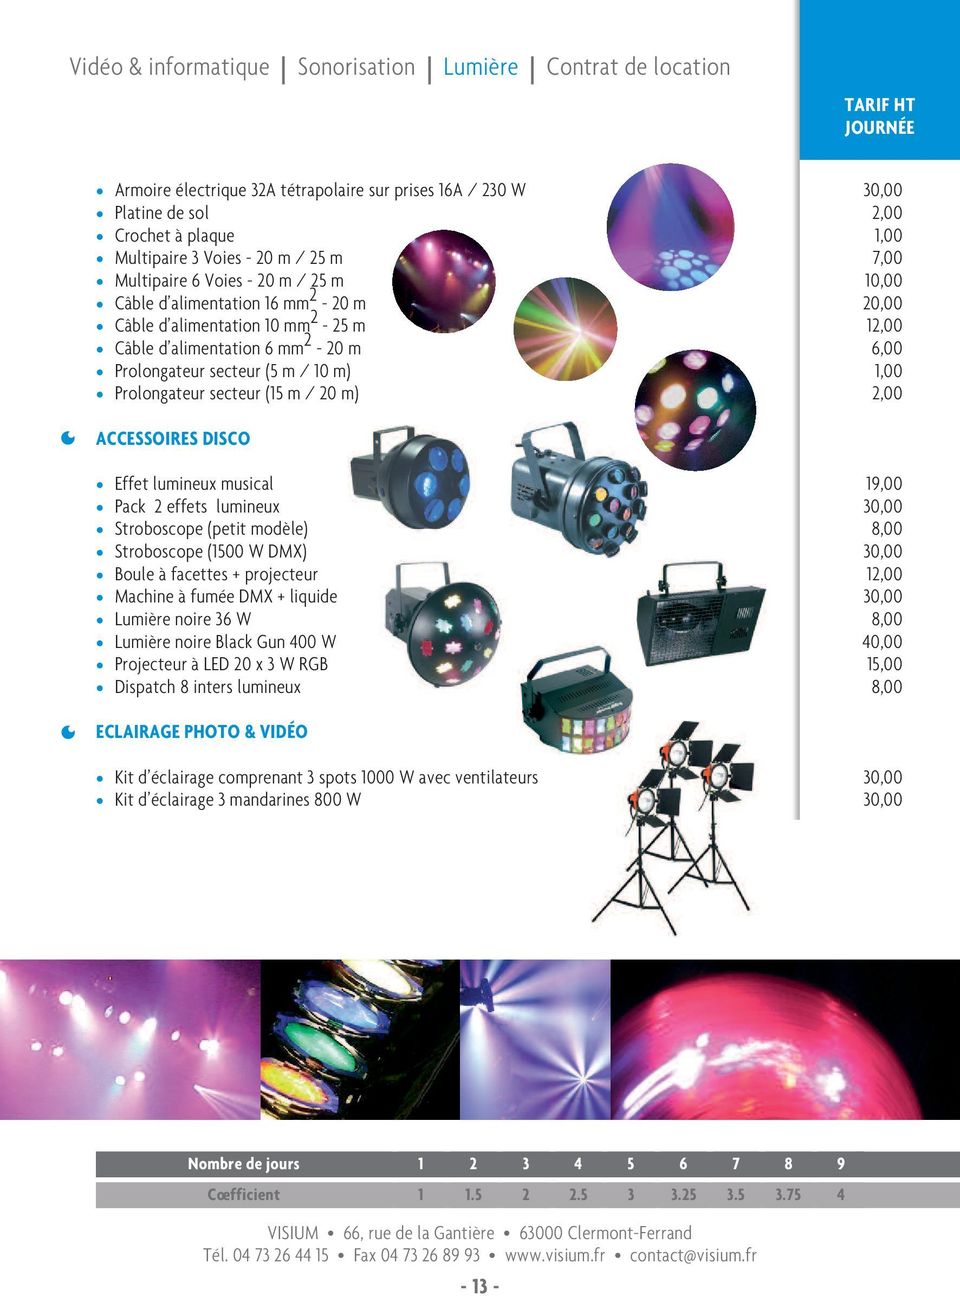 1,00 7,00 12,00 6,00 1,00 2,00 ACCESSOIRES DISCO Effet umineux musica Pack 2 effets umineux Stroboscope (petit modèe) Stroboscope (1500 W DMX) Boue à facettes + projecteur Machine à fumée DMX +